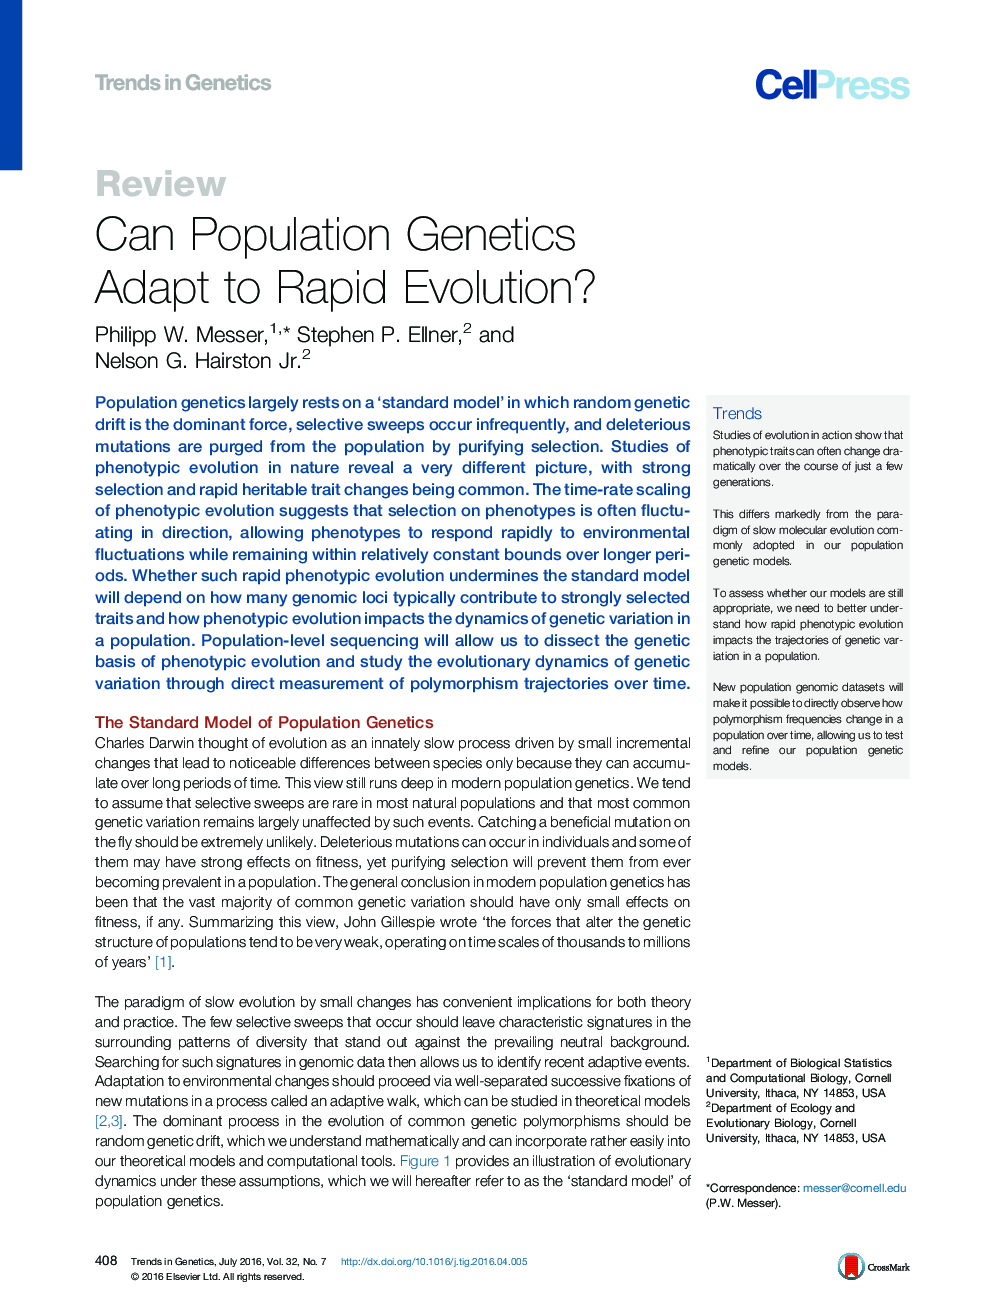 آیا ژنتیک جمعیت میتواند به تکامل سریع دست یابد؟ 